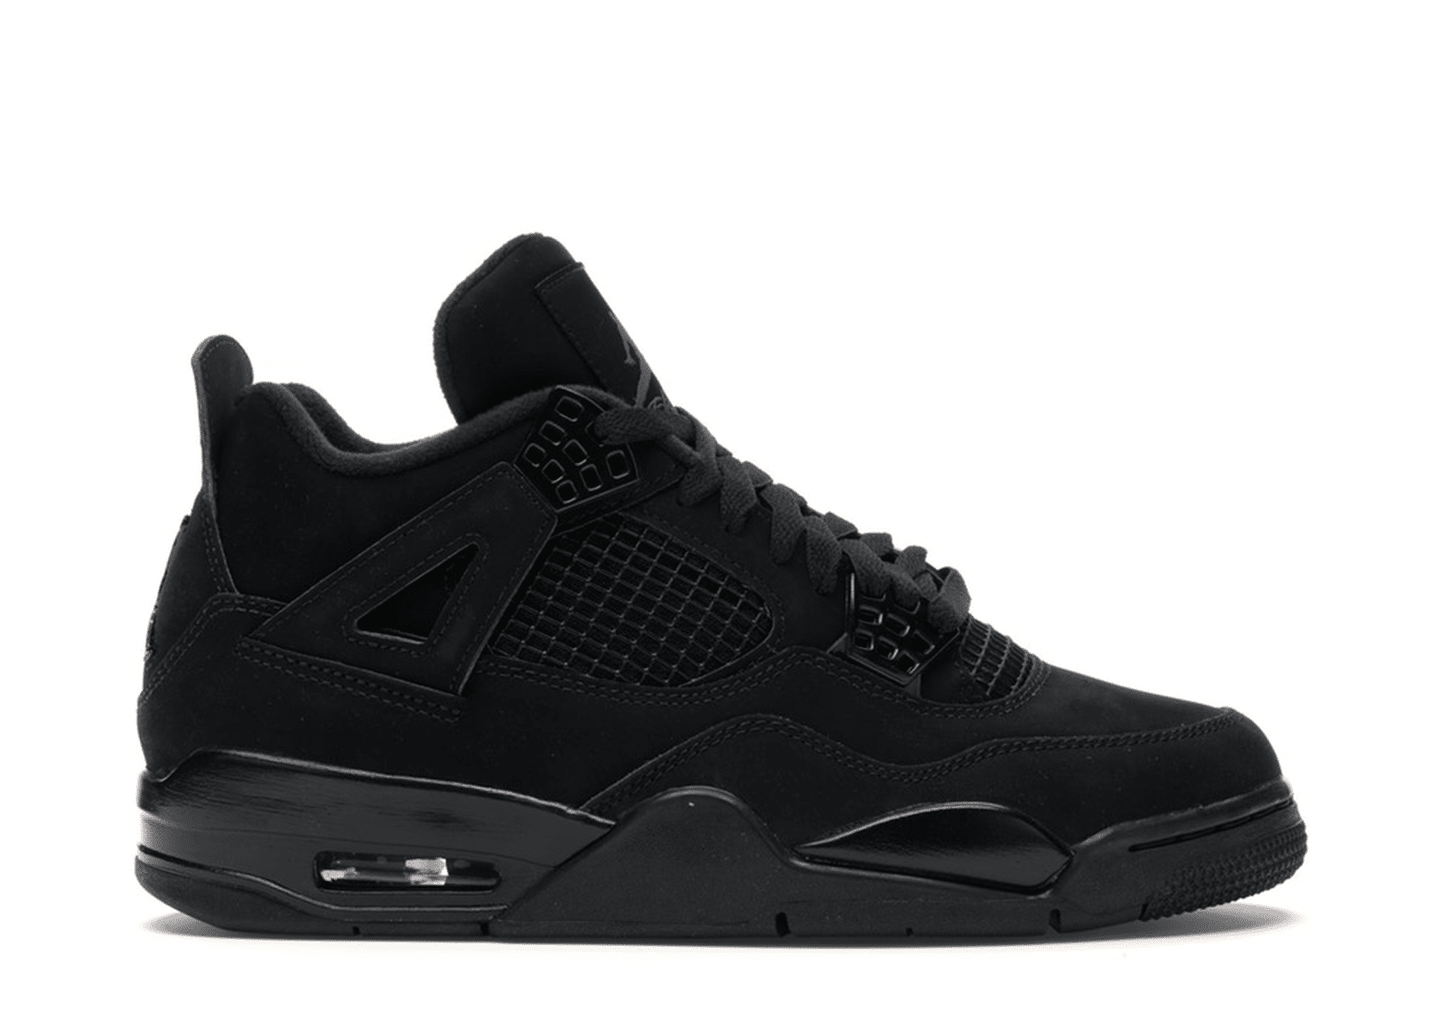 Air Jordan 4 Retro "Black Cat" (2020) Sneakers (Men's)